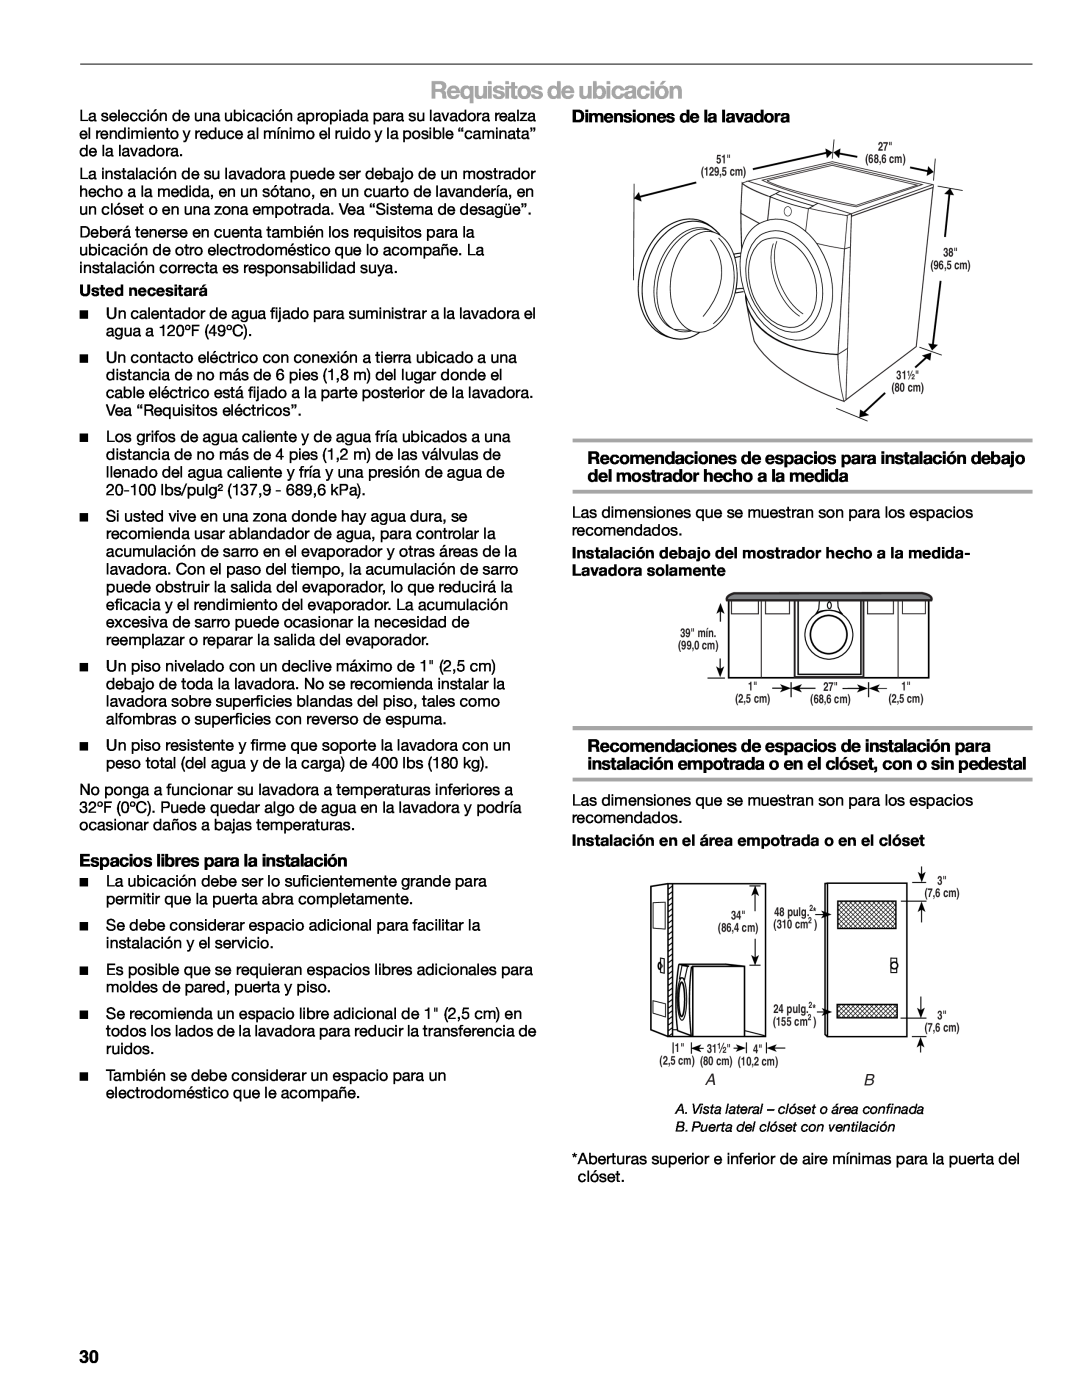 Kenmore W10133487A manual Requisitos de ubicación, Dimensiones de la lavadora, Espacios libres para la instalación 